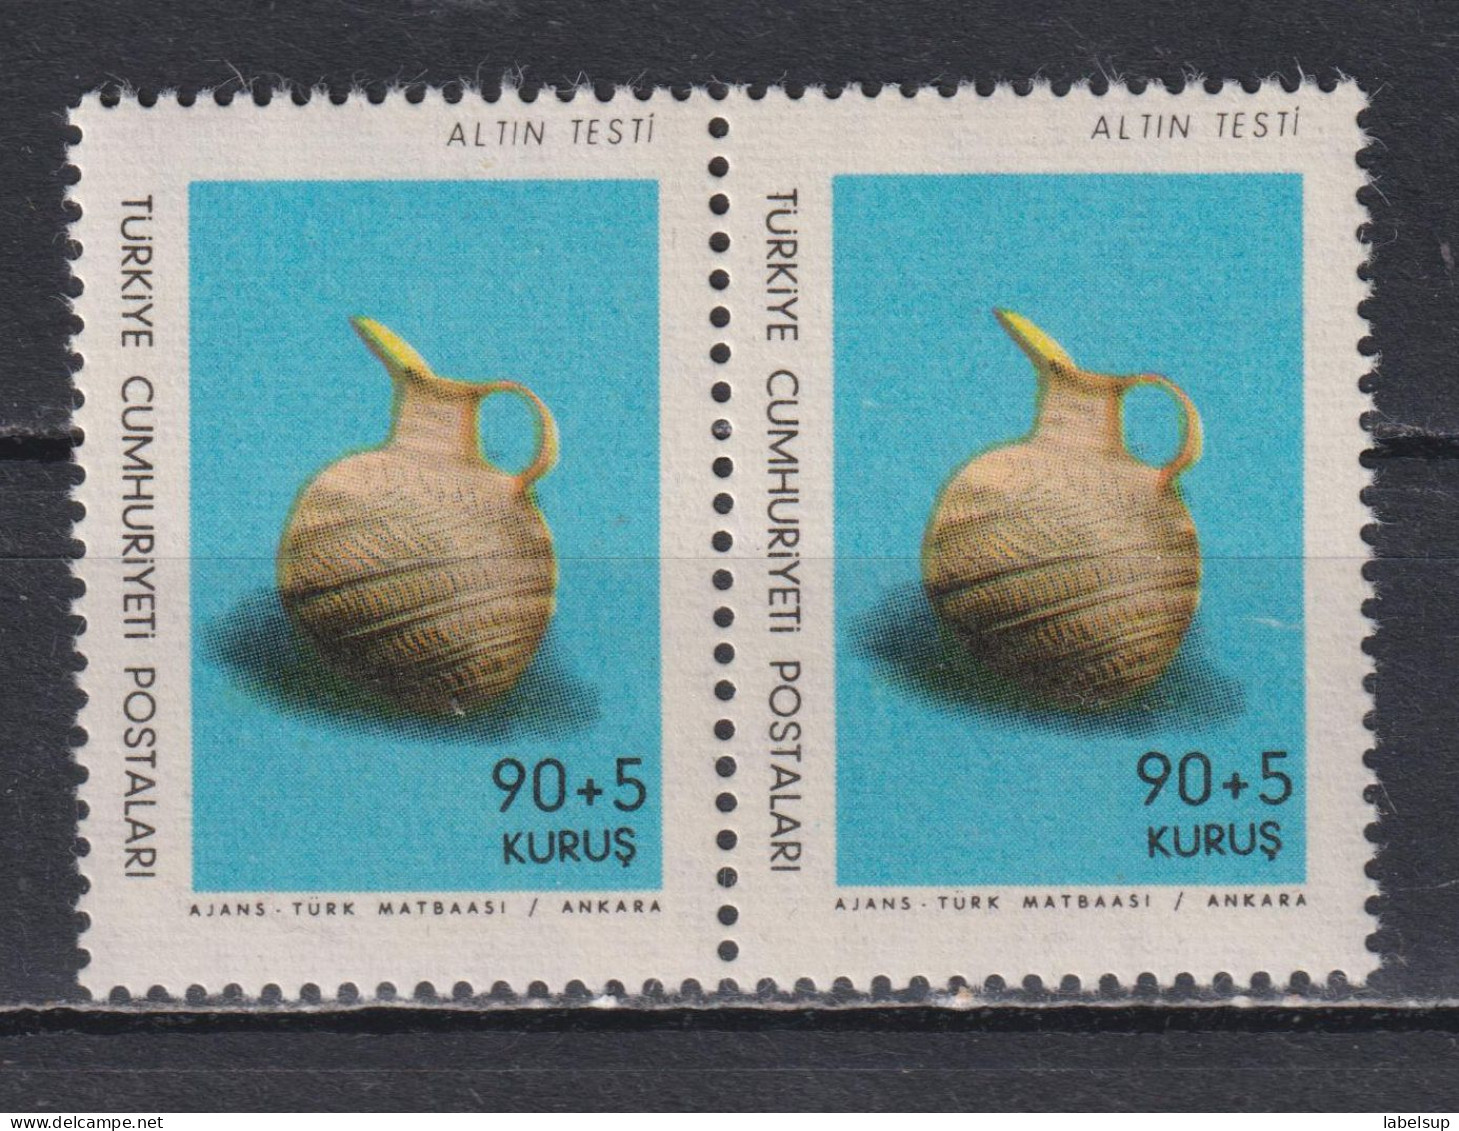 Paire De Timbres Neufs** De Turquie De 1966 N° 1786 MNH - Unused Stamps